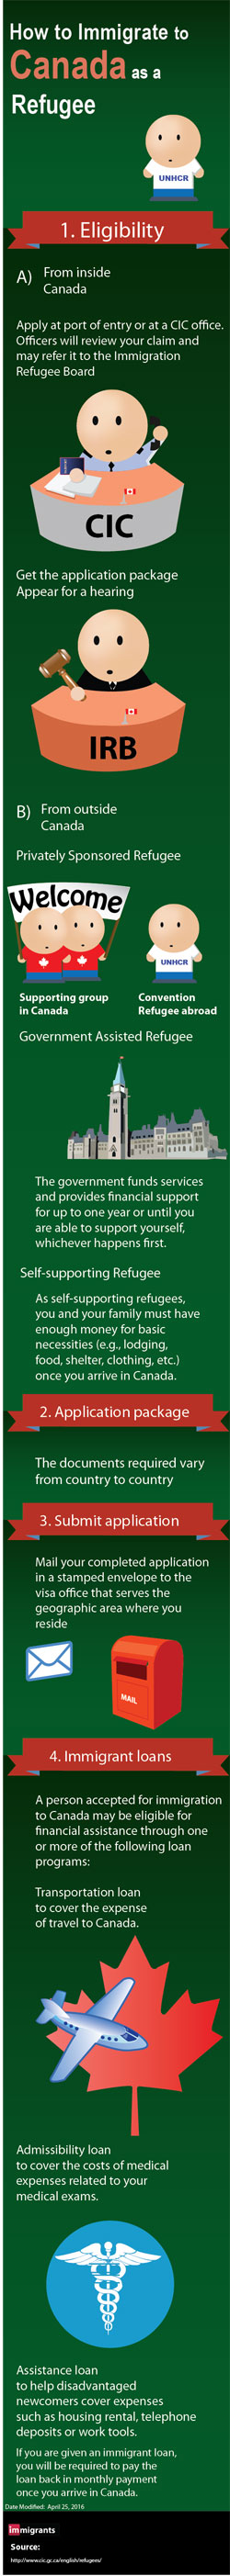 Canada Refugee visa infographic